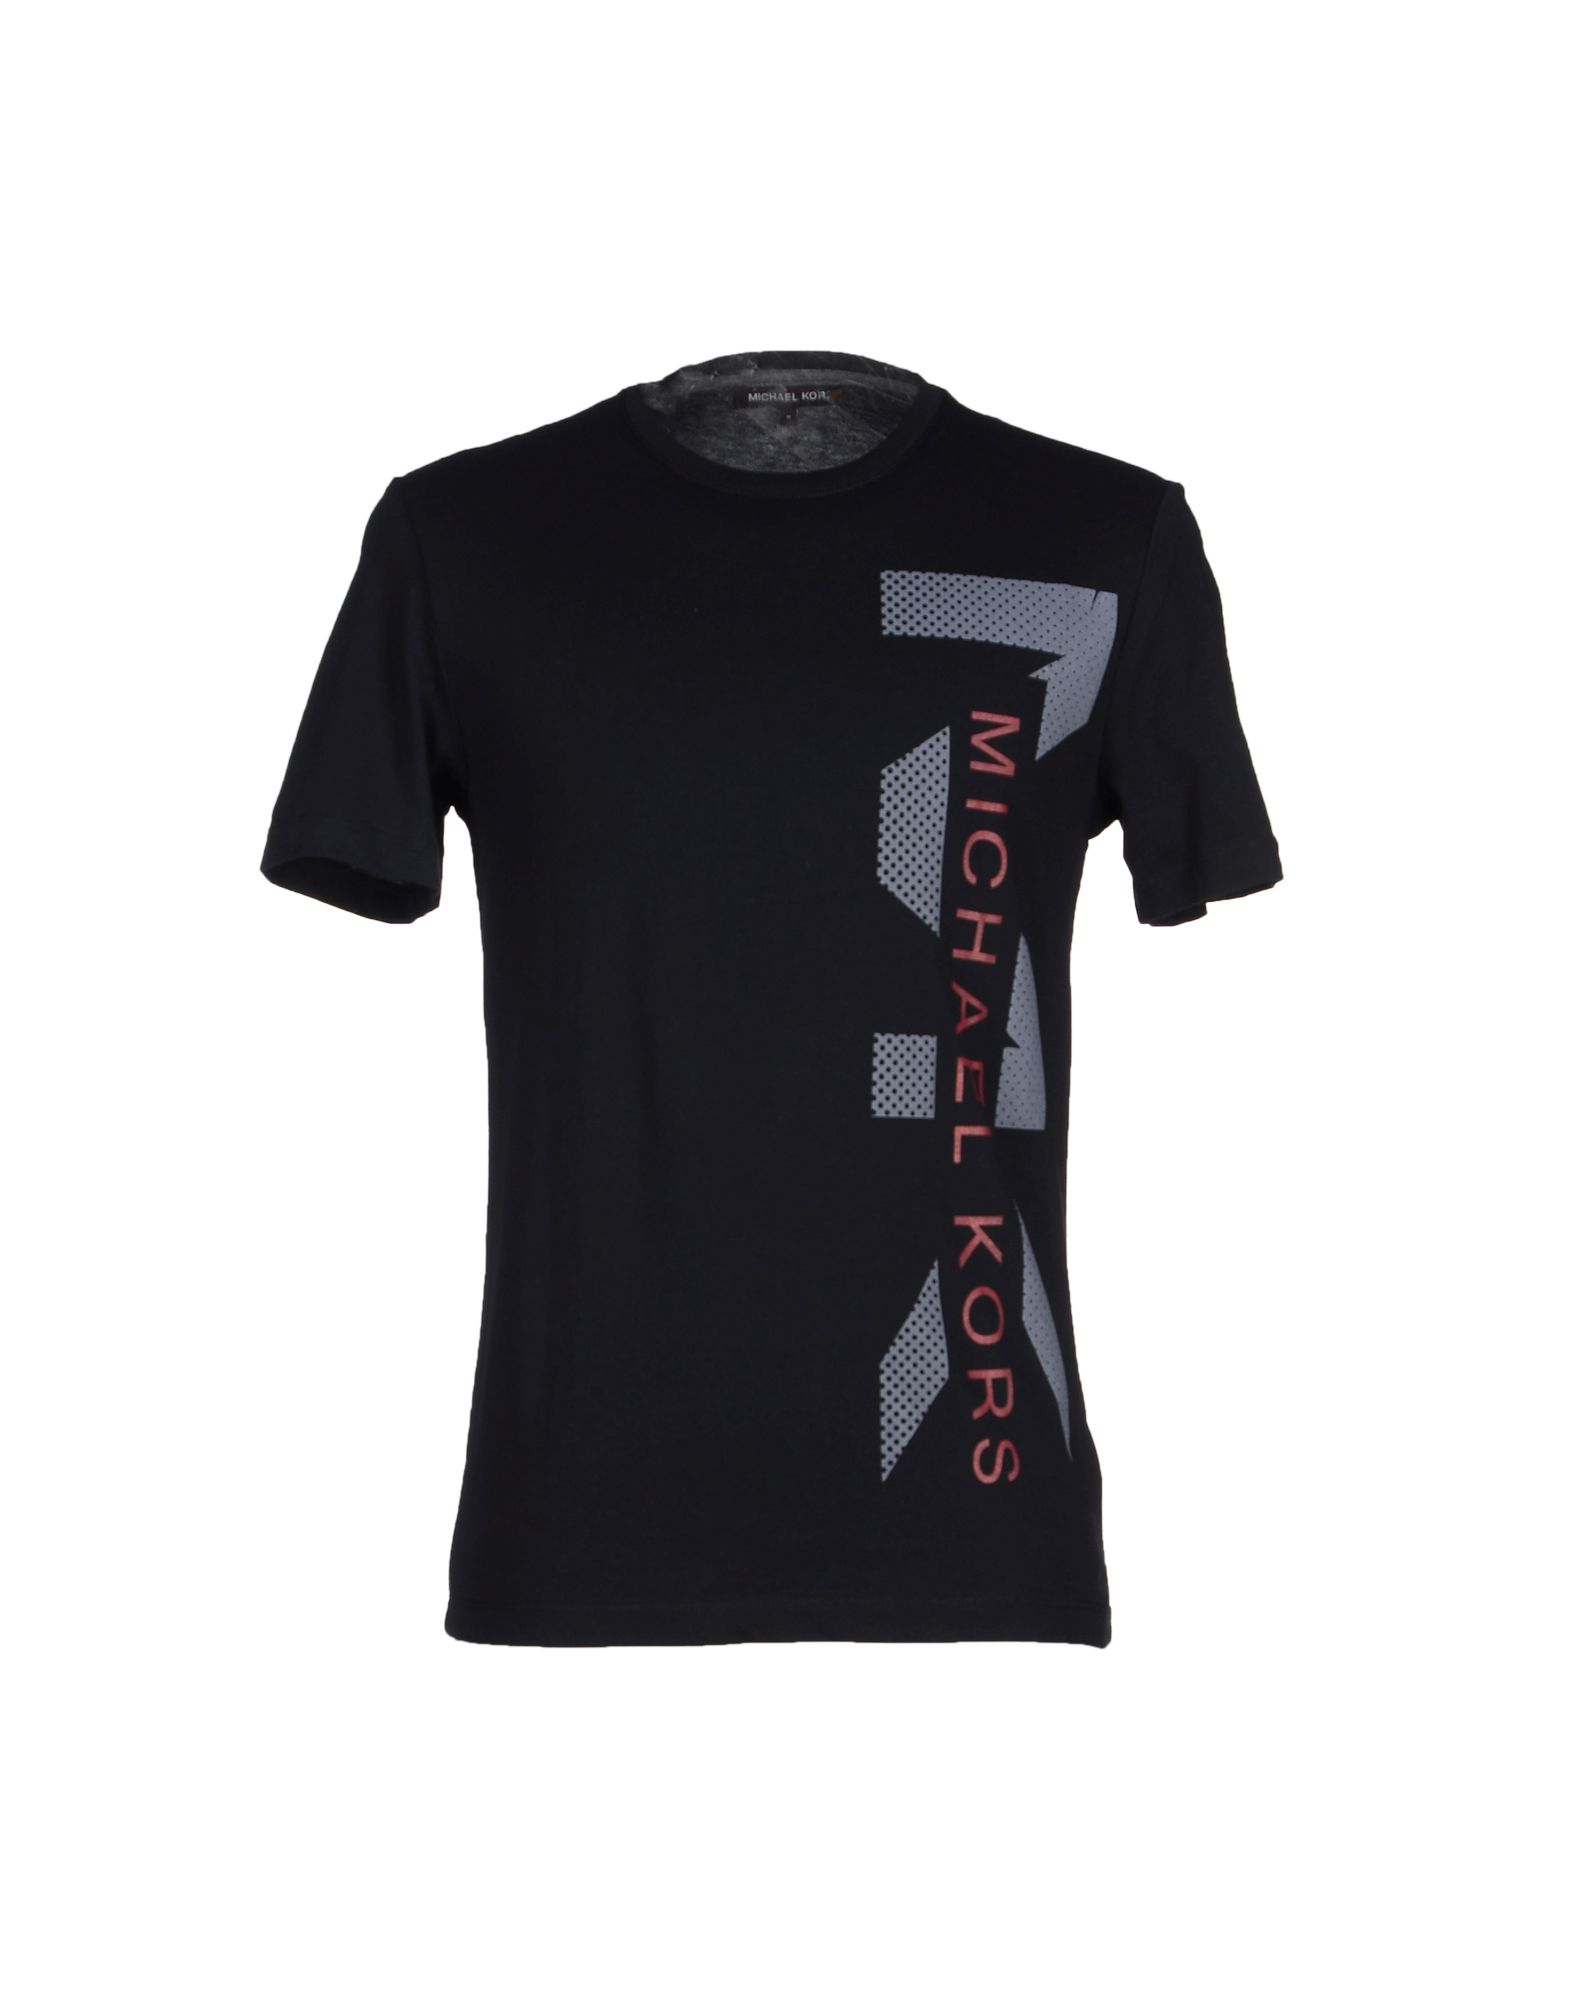 Lyst - Michael Kors T-shirt in Black for Men